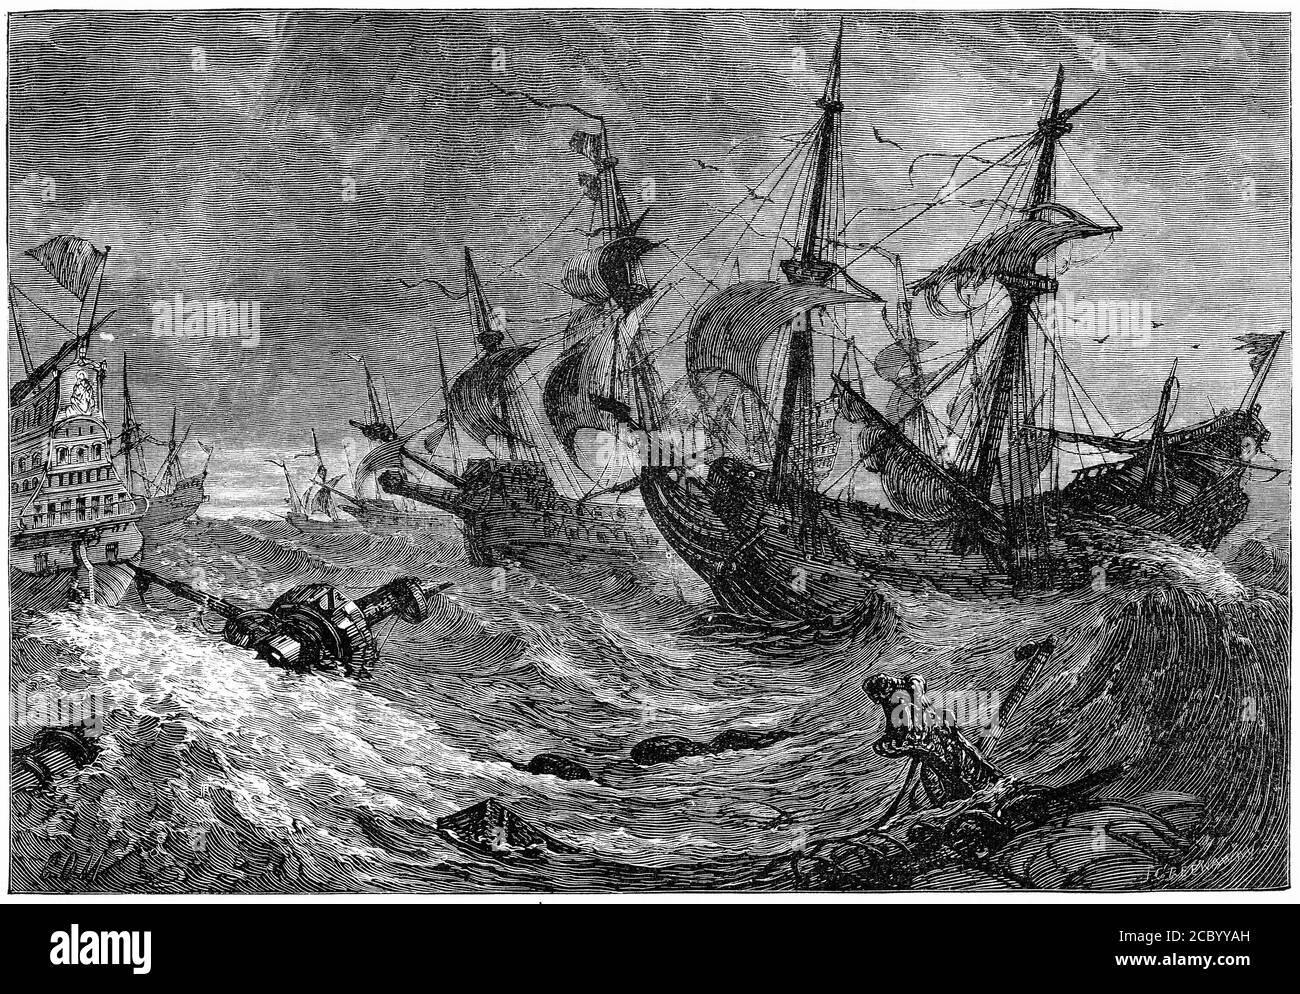 Gravure de l'Armada espagnole diffusée dans la tempête, 1588, illustration de 'l'histoire du protestantisme' par James Aitken Wylie (1808-1890), pub. 1878 Banque D'Images